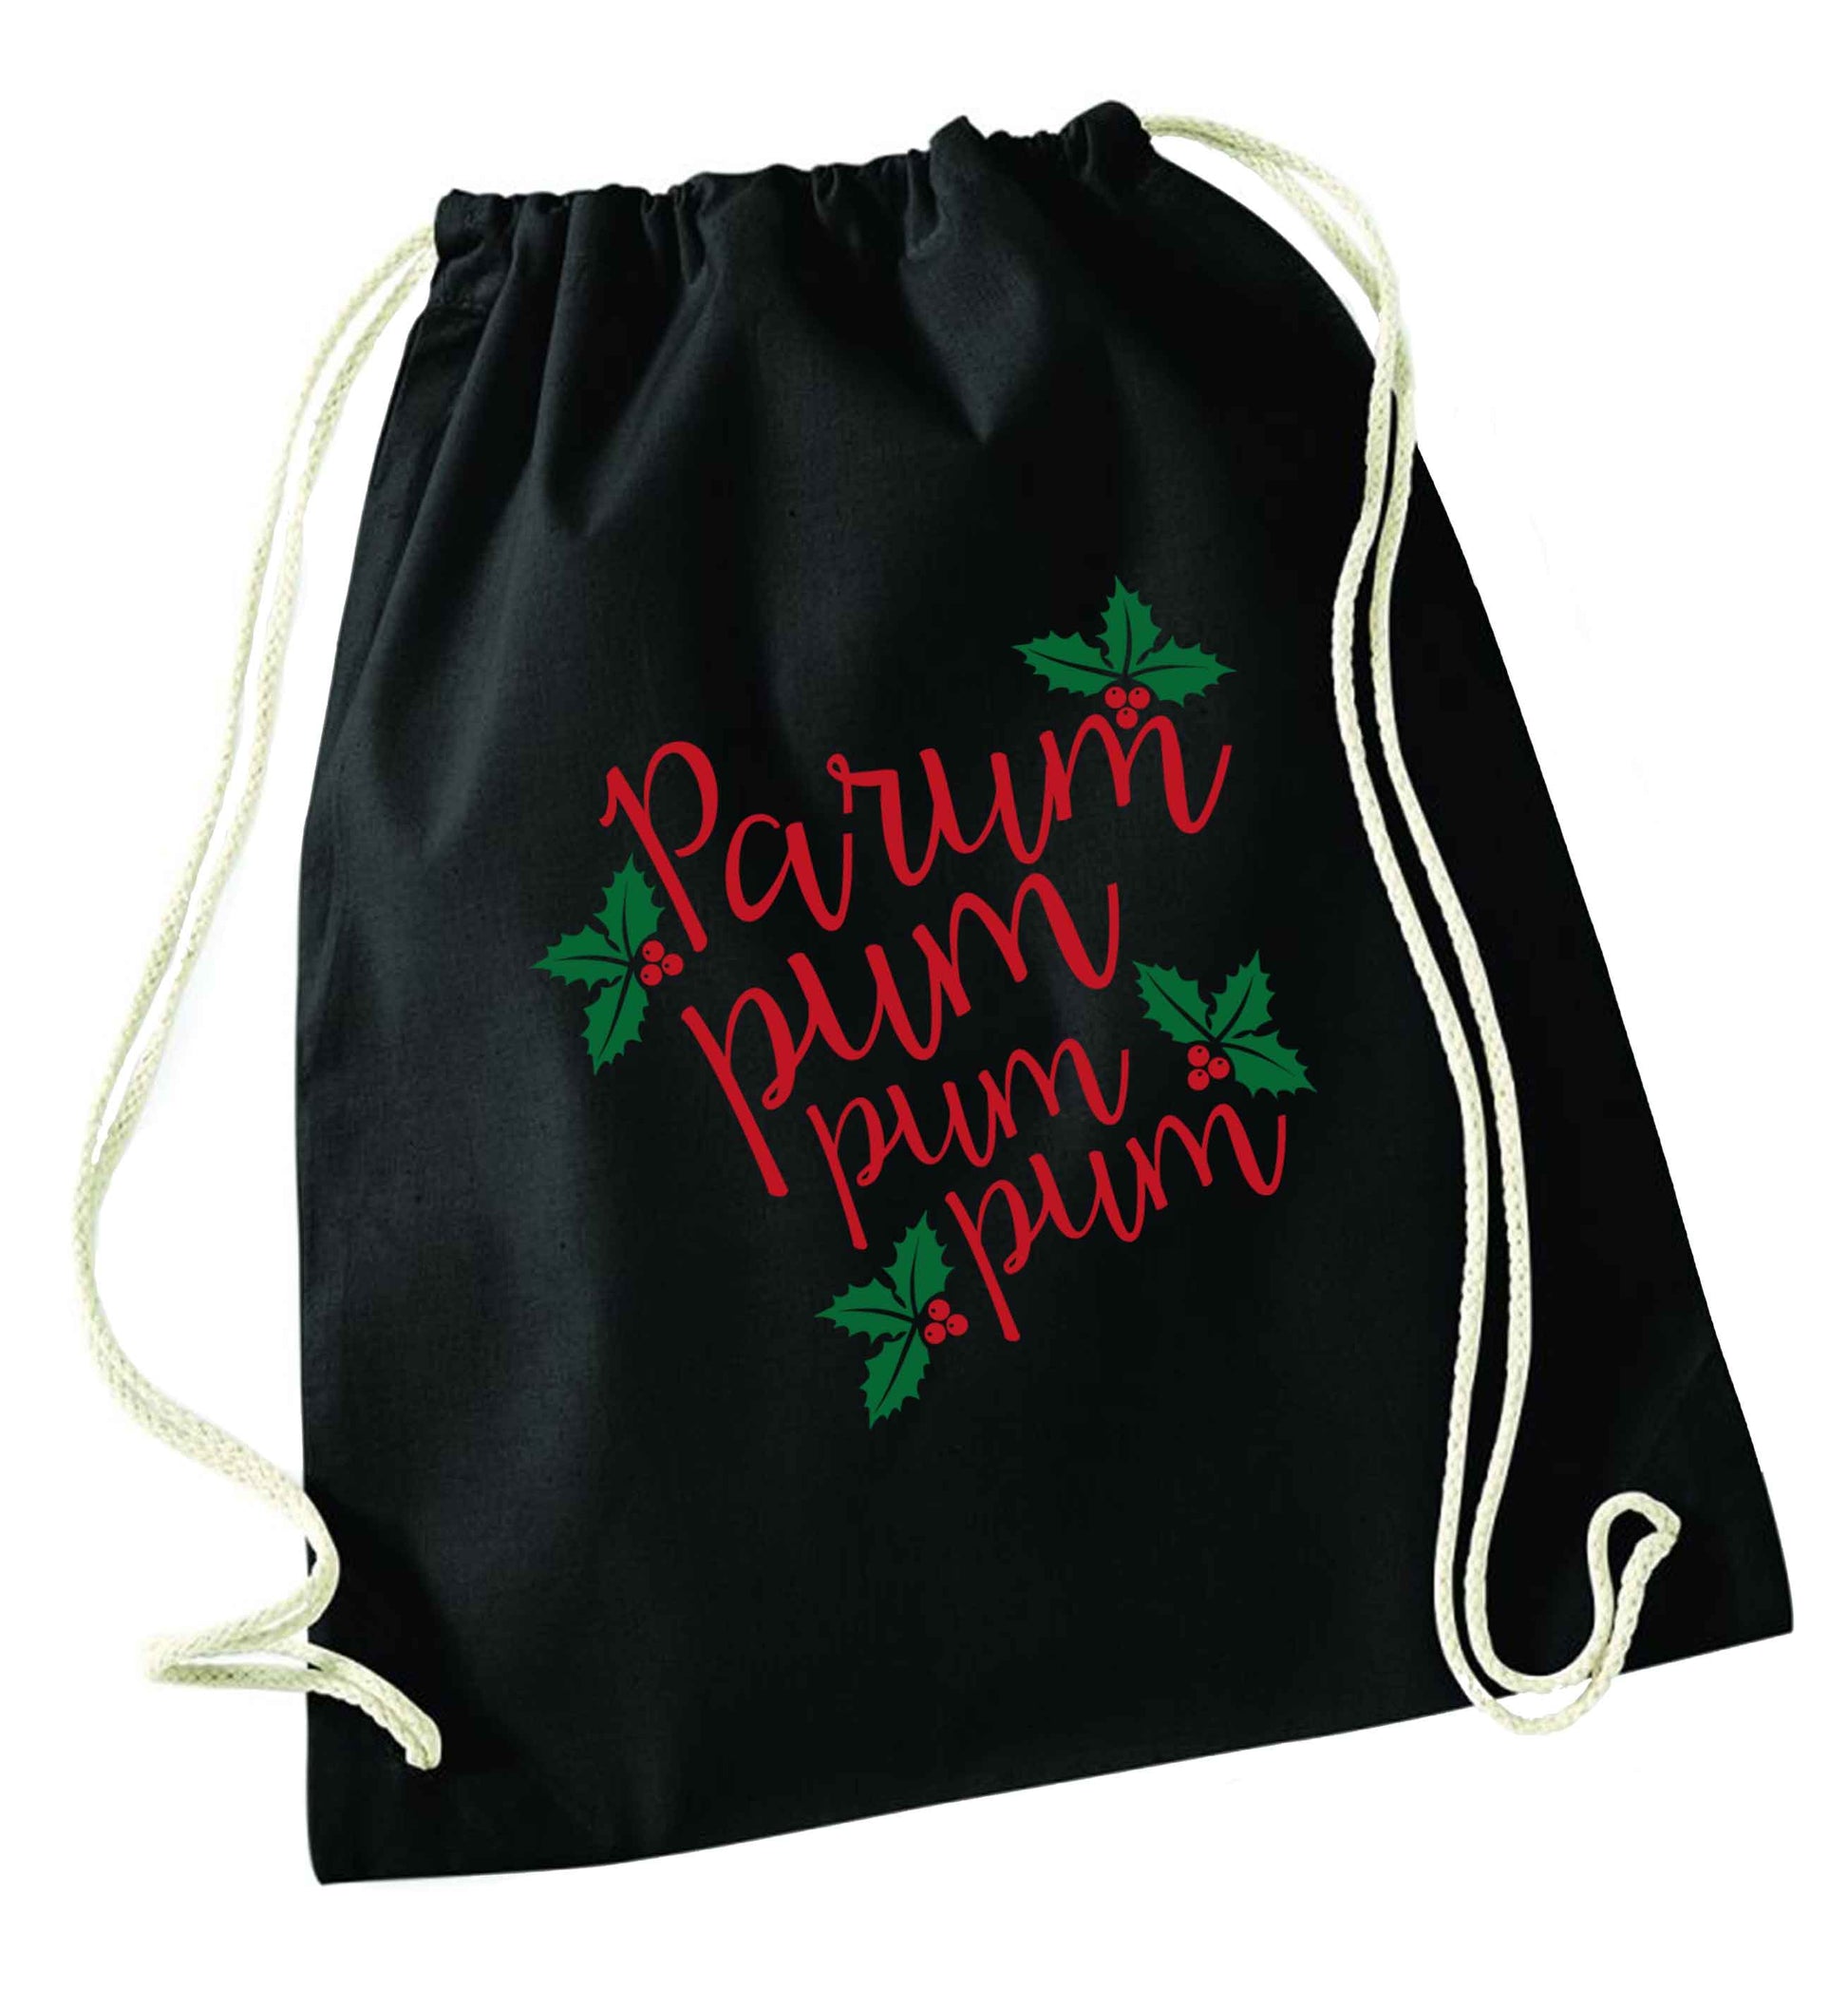 Pa rum pum pum pum black drawstring bag